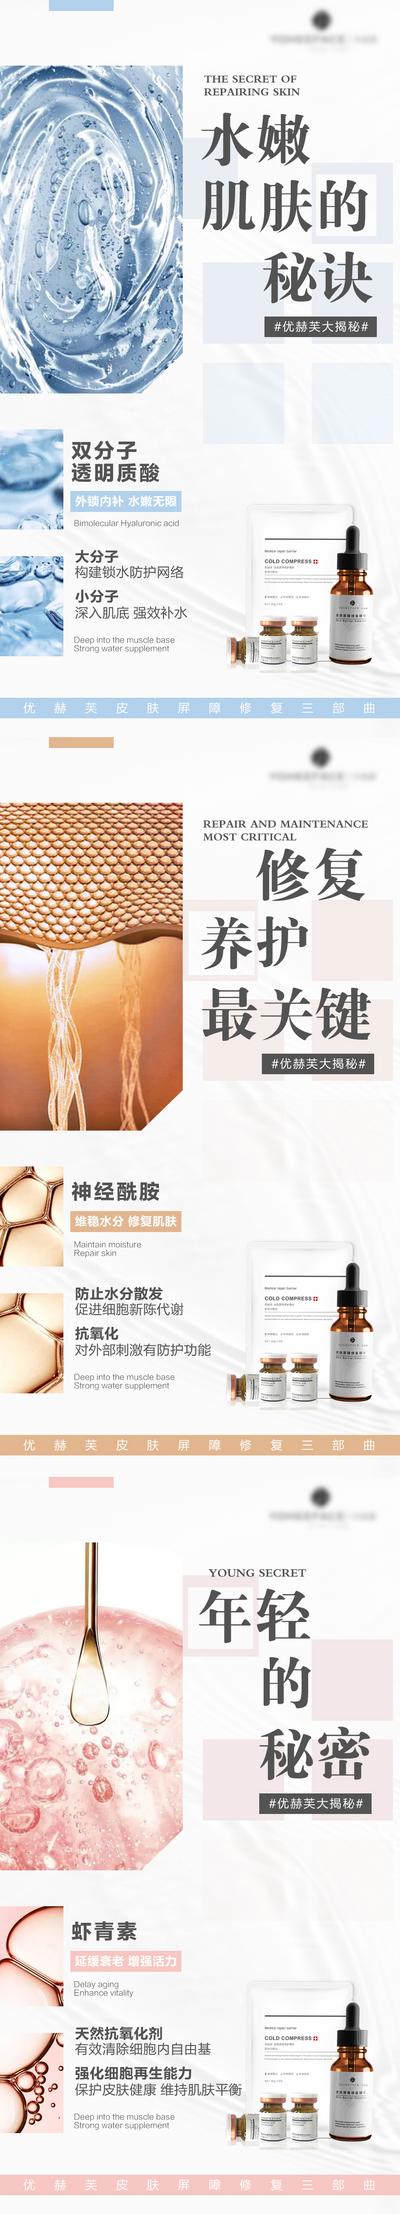 南门网 夏日风医用护肤品系列海报分享